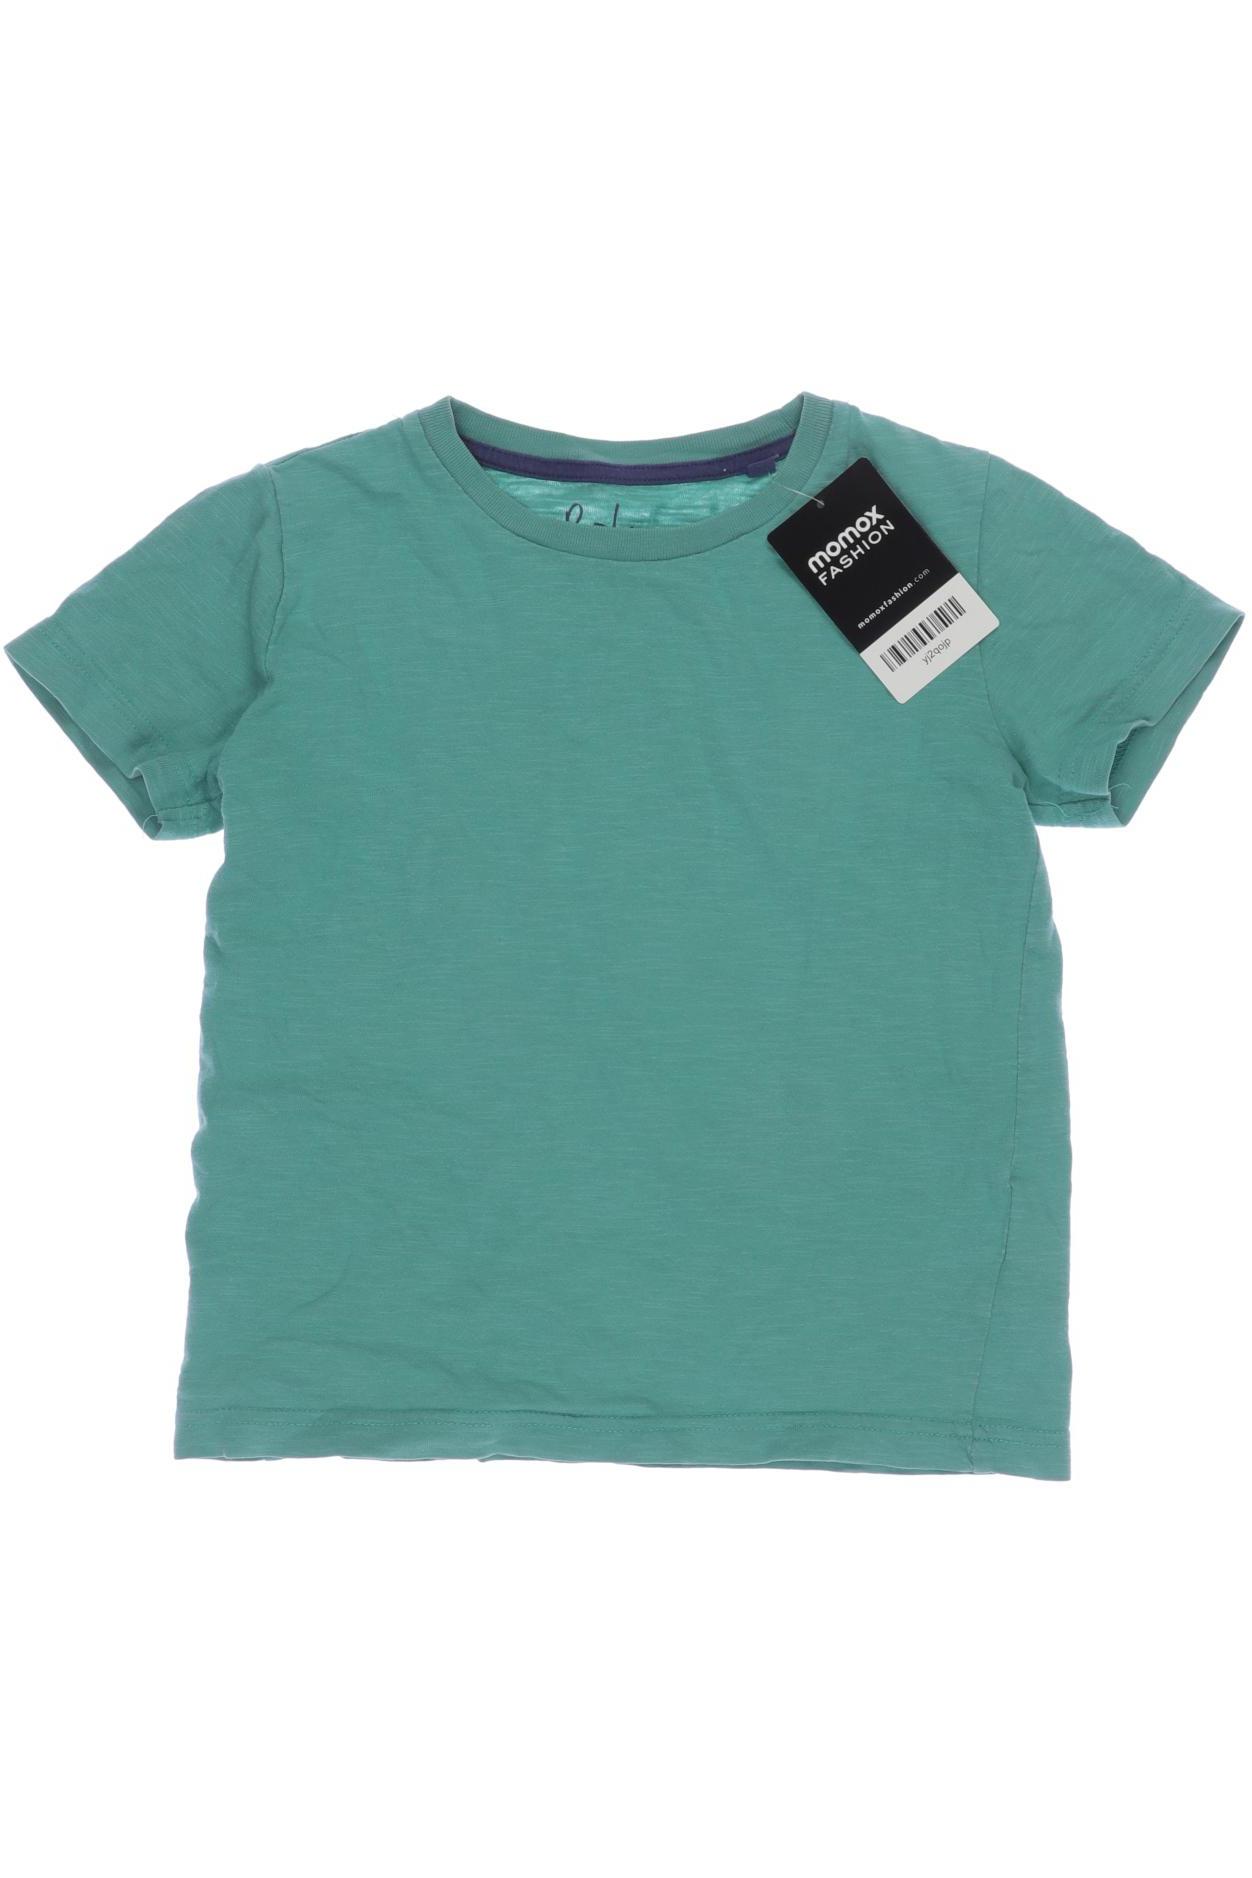 Mini Boden Herren T-Shirt, grün, Gr. 116 von Mini Boden